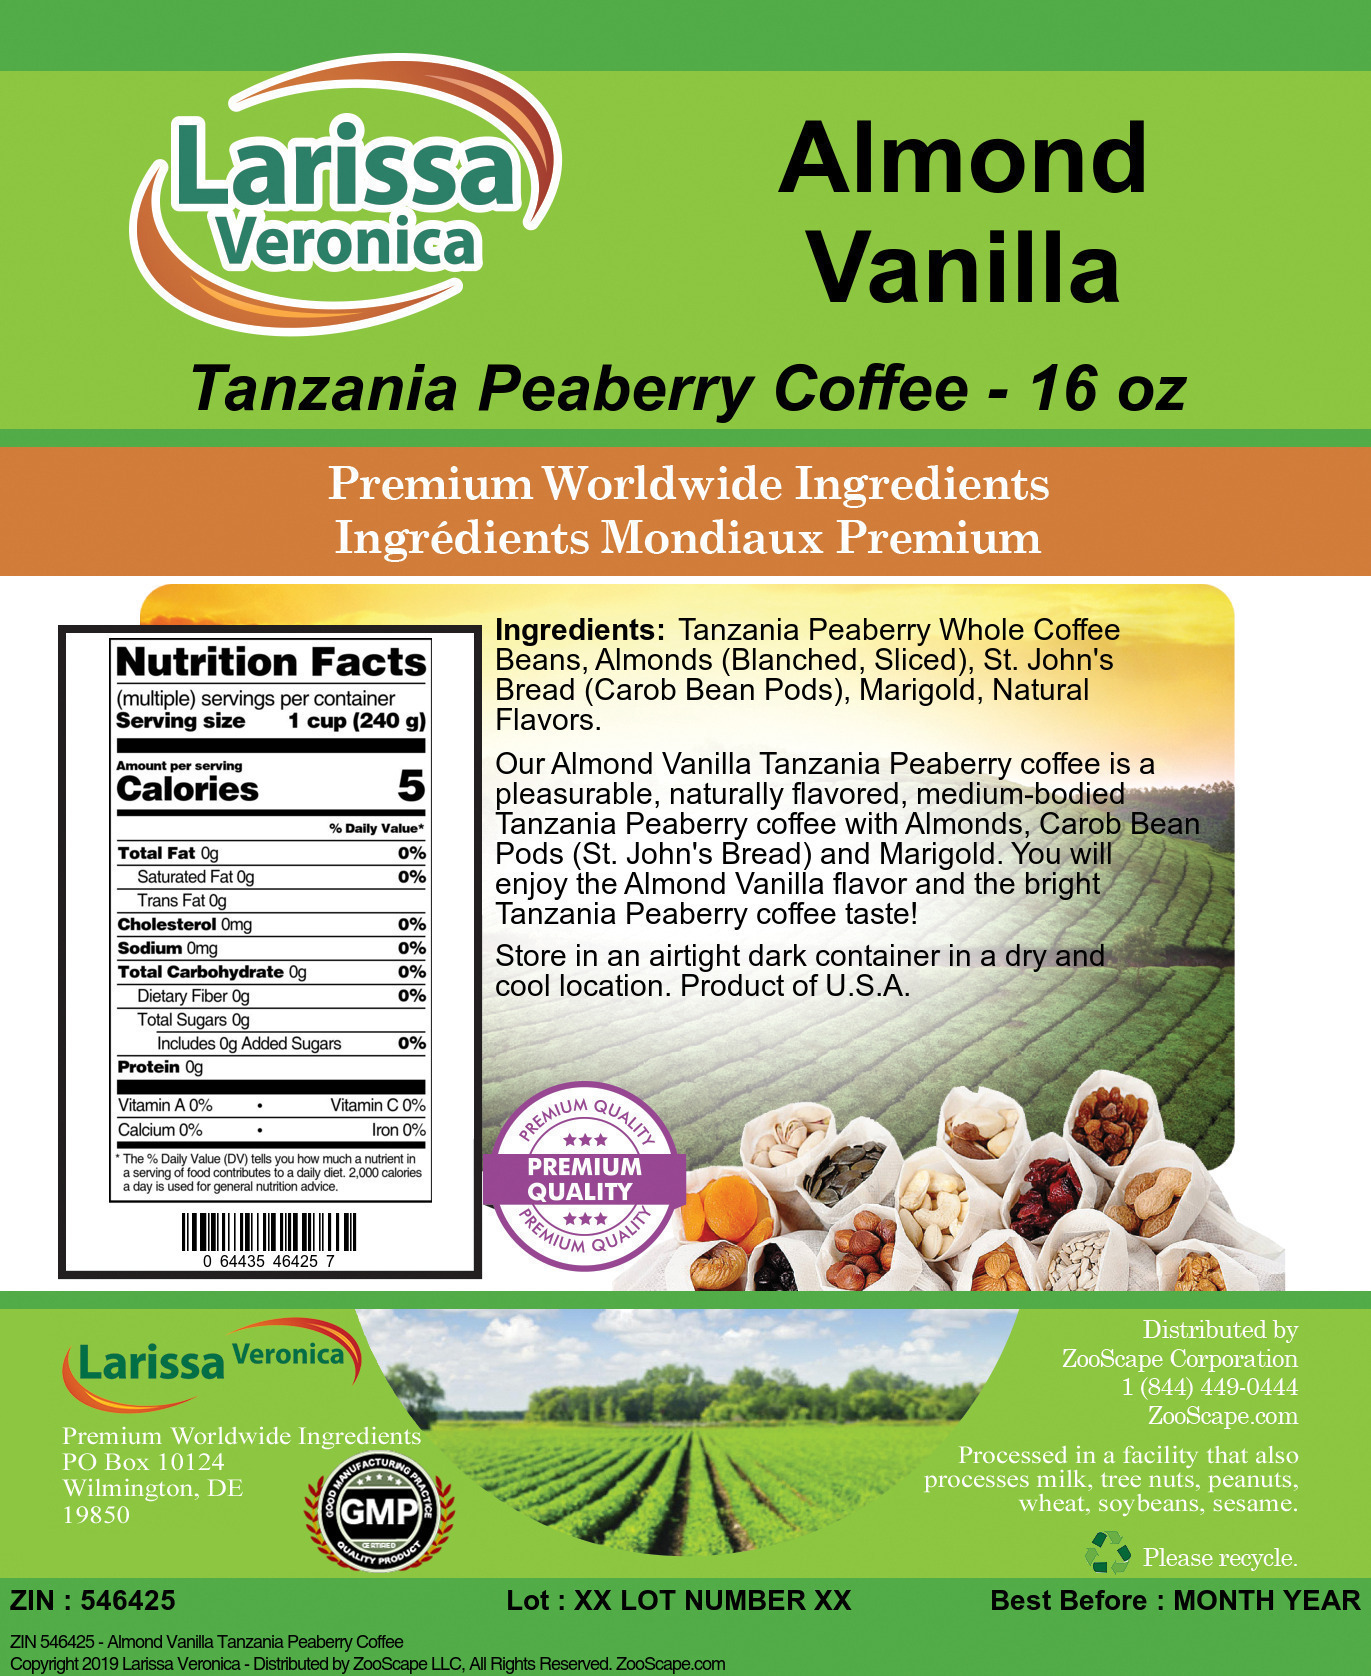 Almond Vanilla Tanzania Peaberry Coffee - Label